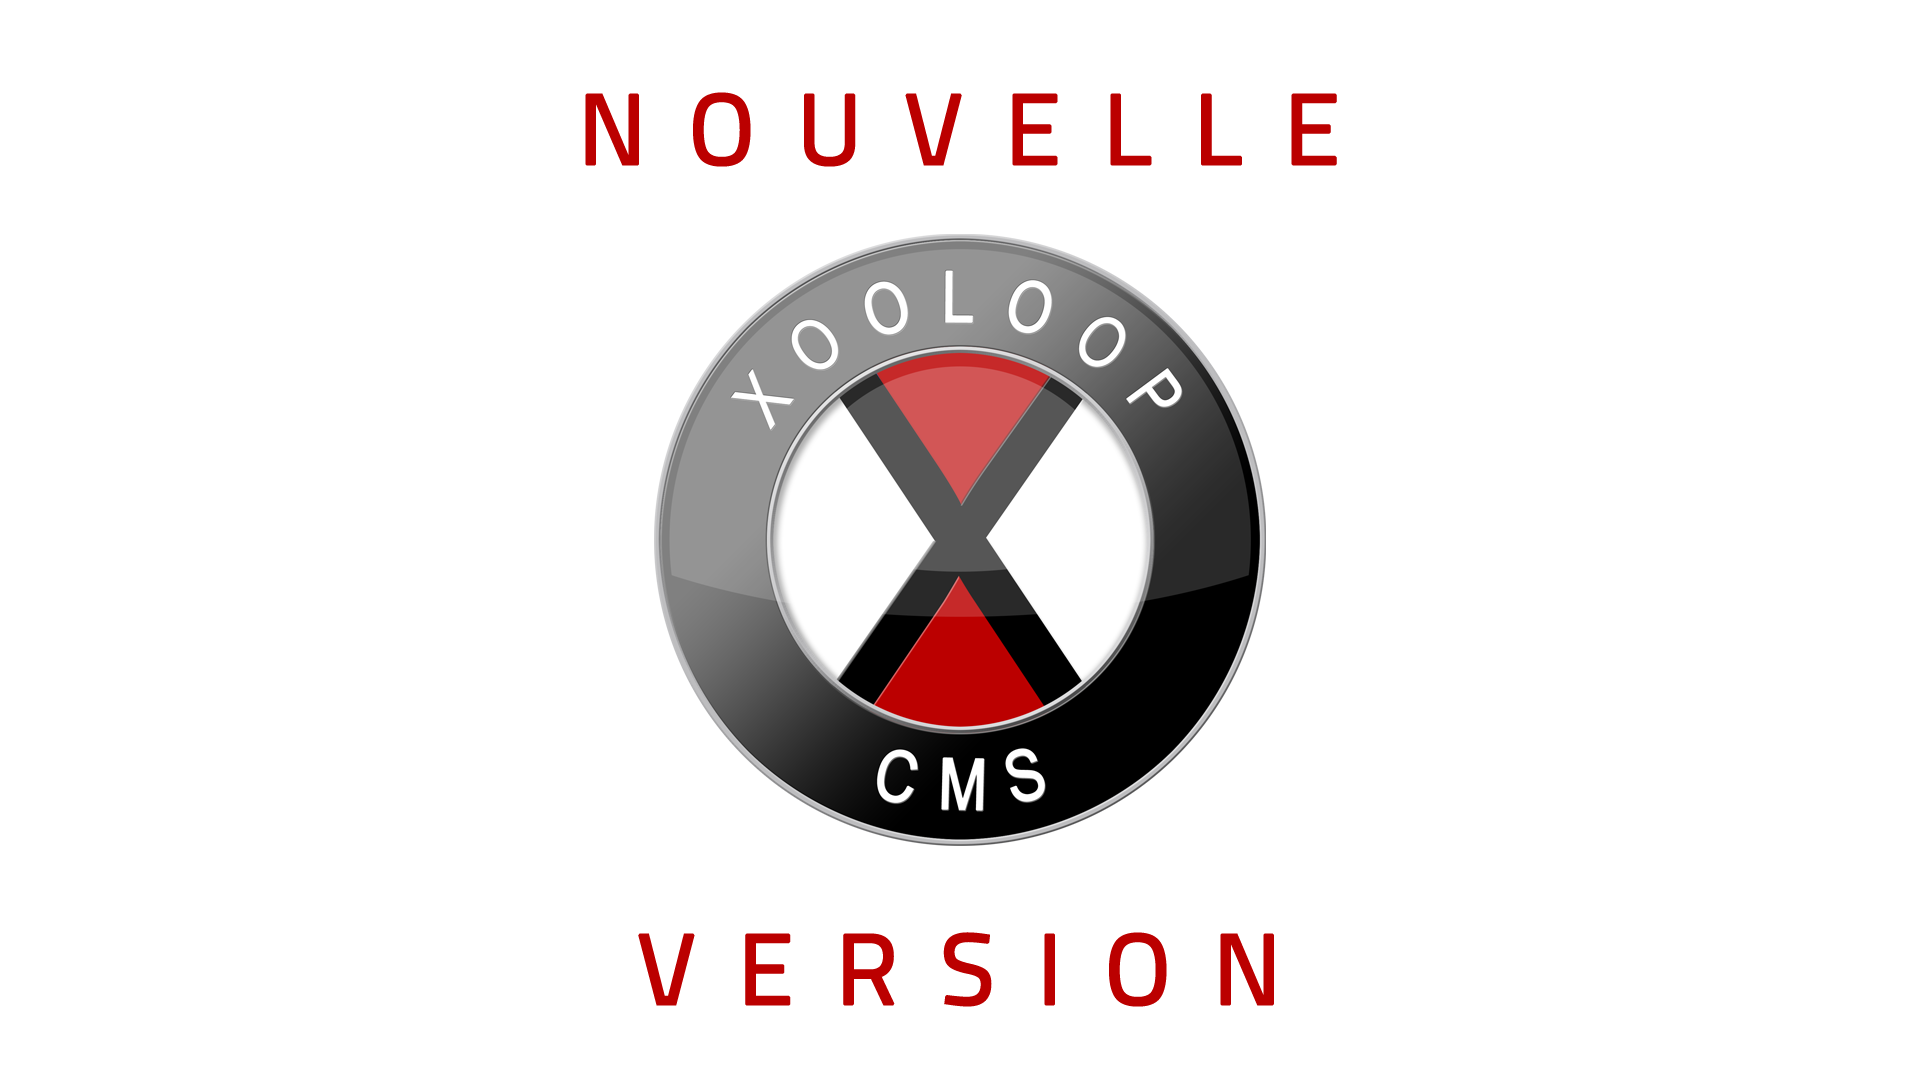 Nouvelle version de Xooloop CMS (v3.3.3)